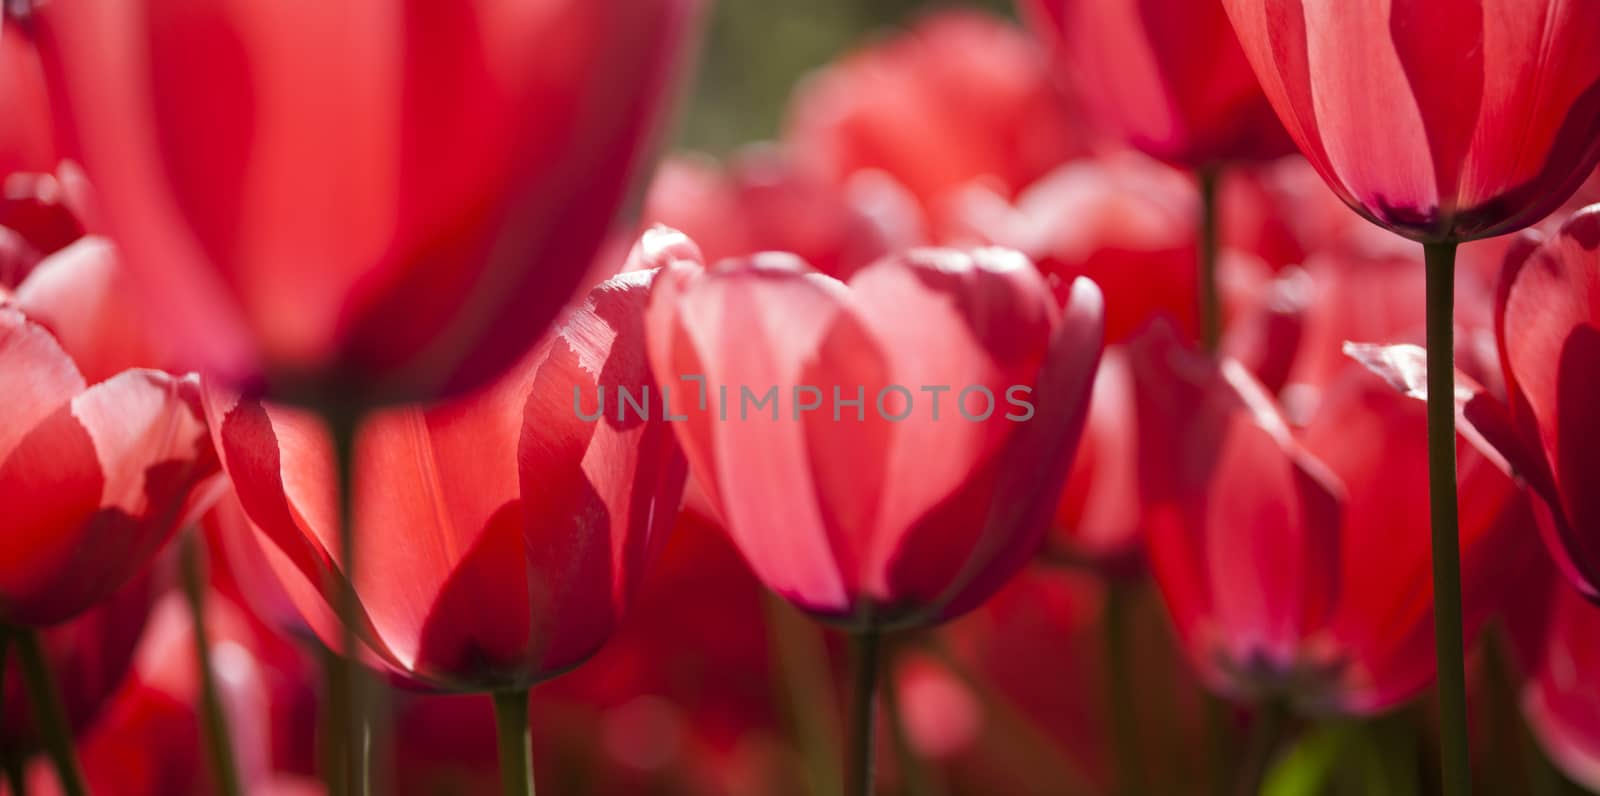 Garden, flower background, tulips by JanPietruszka